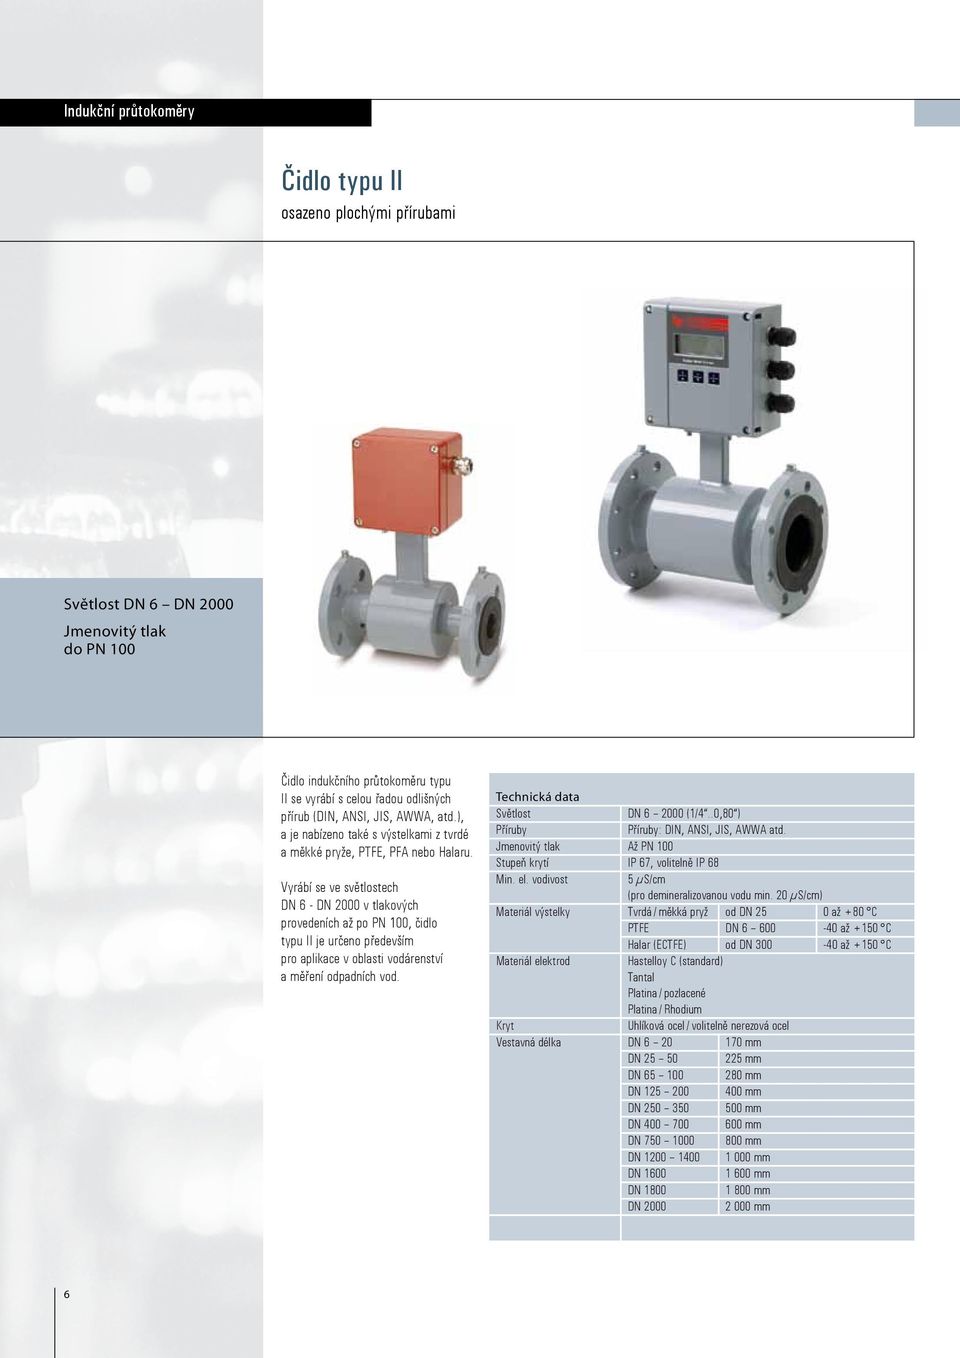 Vyrábí se ve světlostech DN 6 - DN 2000 v tlakových provedeních až po PN 100, čidlo typu II je určeno především pro aplikace v oblasti vodárenství a měření odpadních vod.